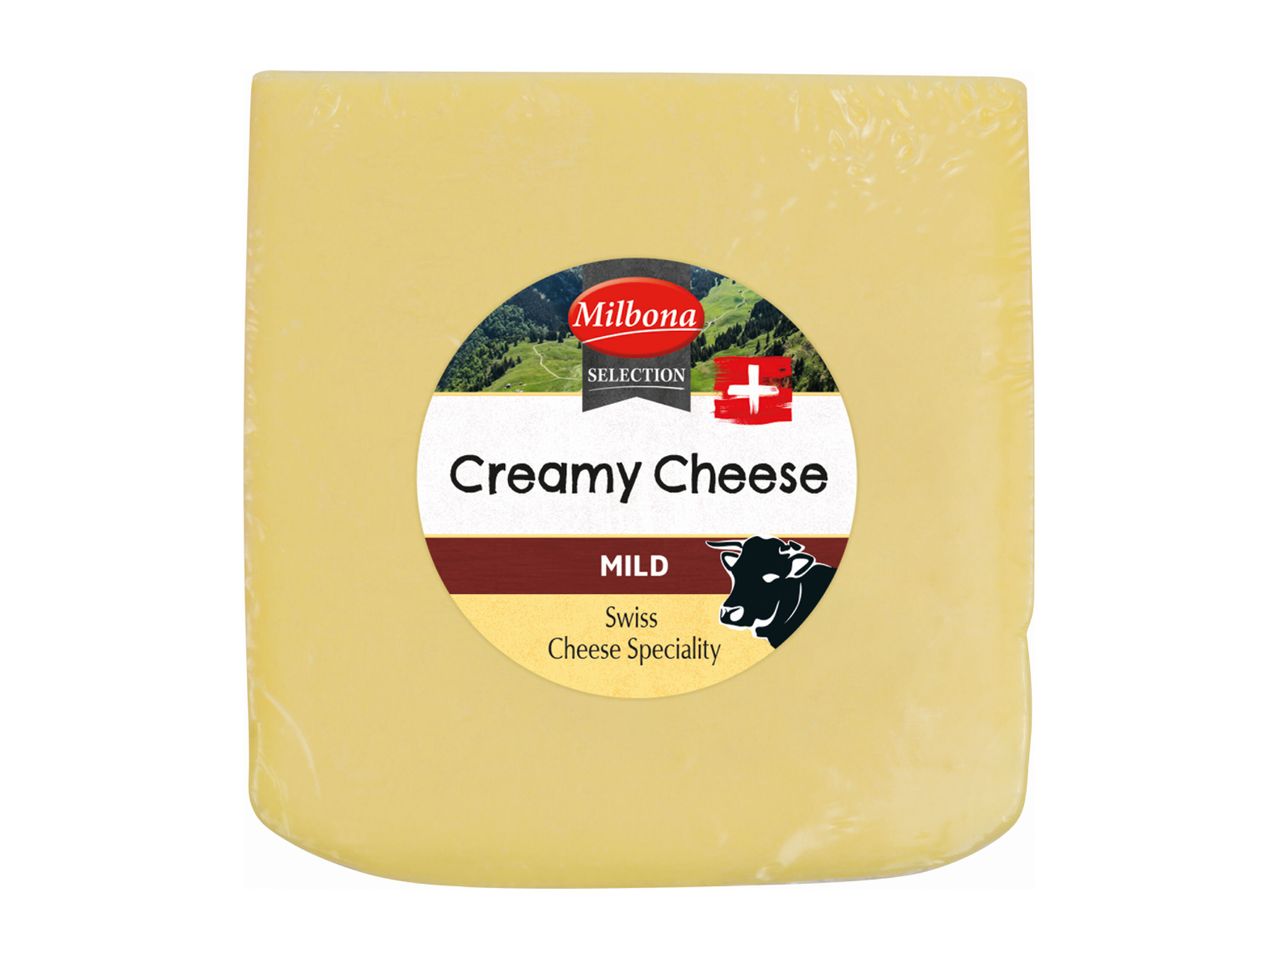 Mene koko näytön tilaan: Milbona Selection St. Galler -juusto - Kuva 1